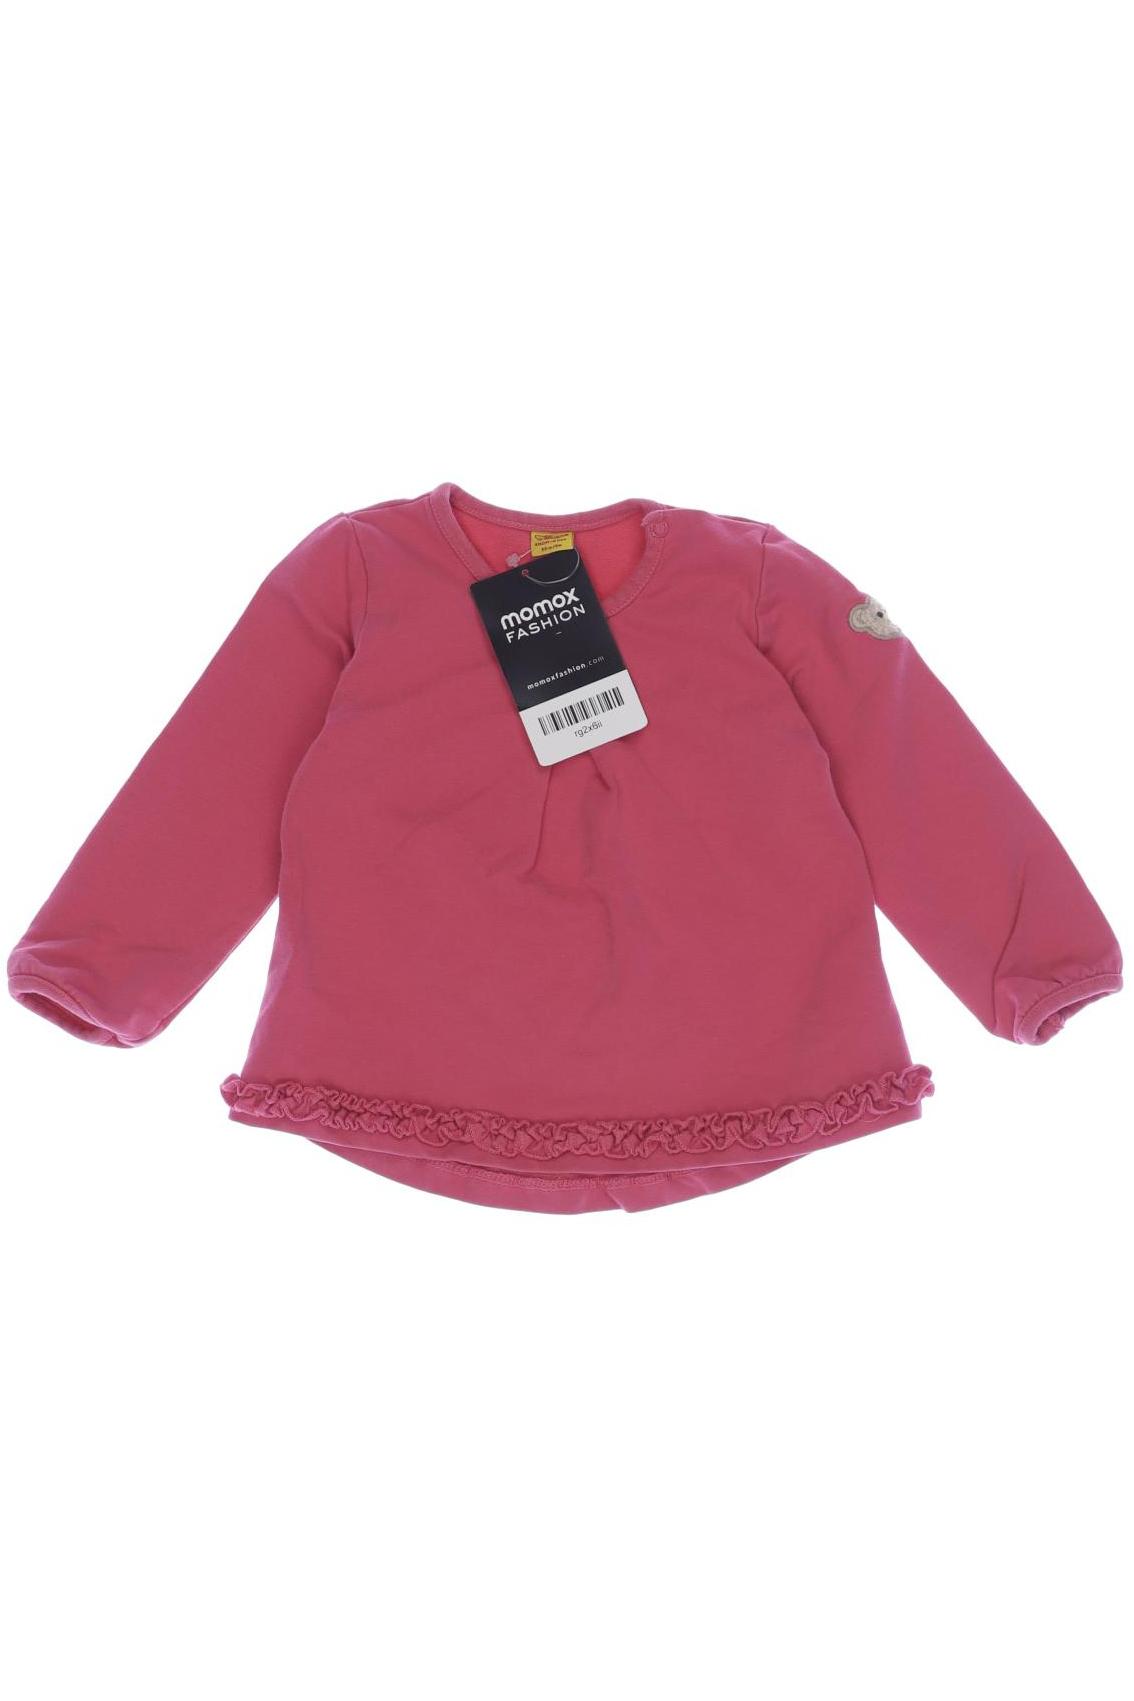 Steiff Damen Hoodies & Sweater, pink, Gr. 68 von Steiff